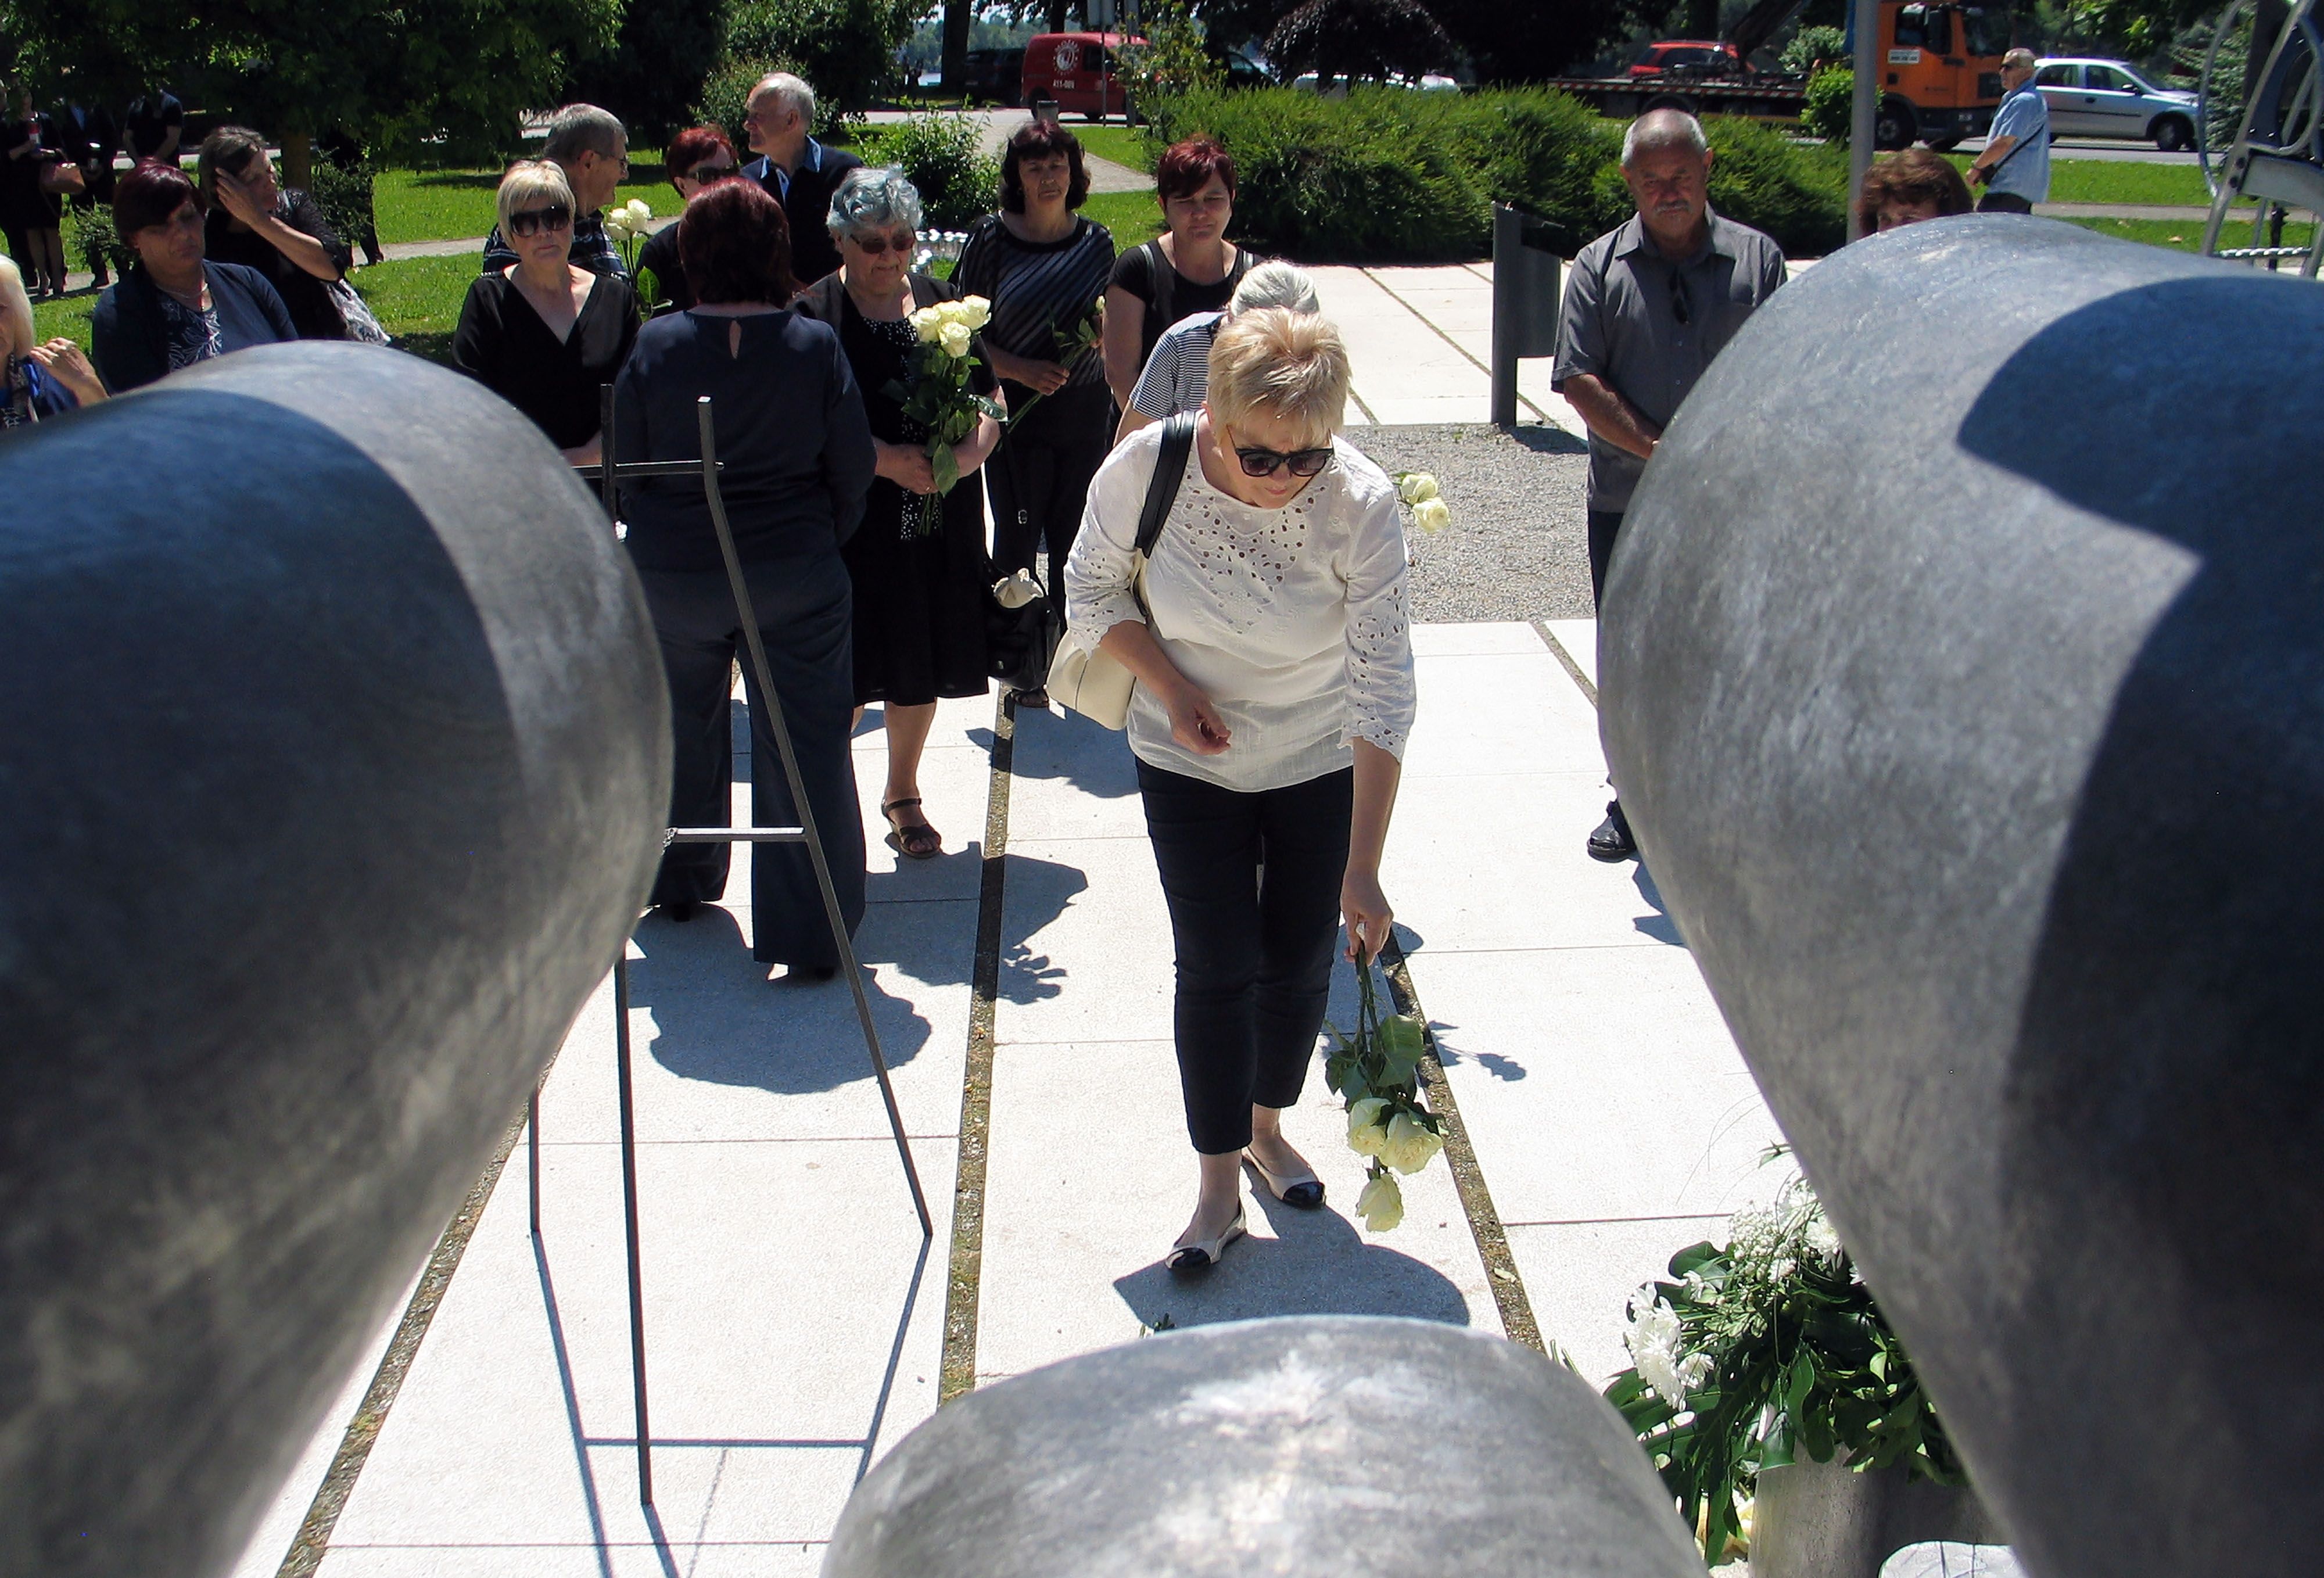 Susret sjećanja na djecu poginulu u Domovinskom ratu - Mali križ - velika žrtva